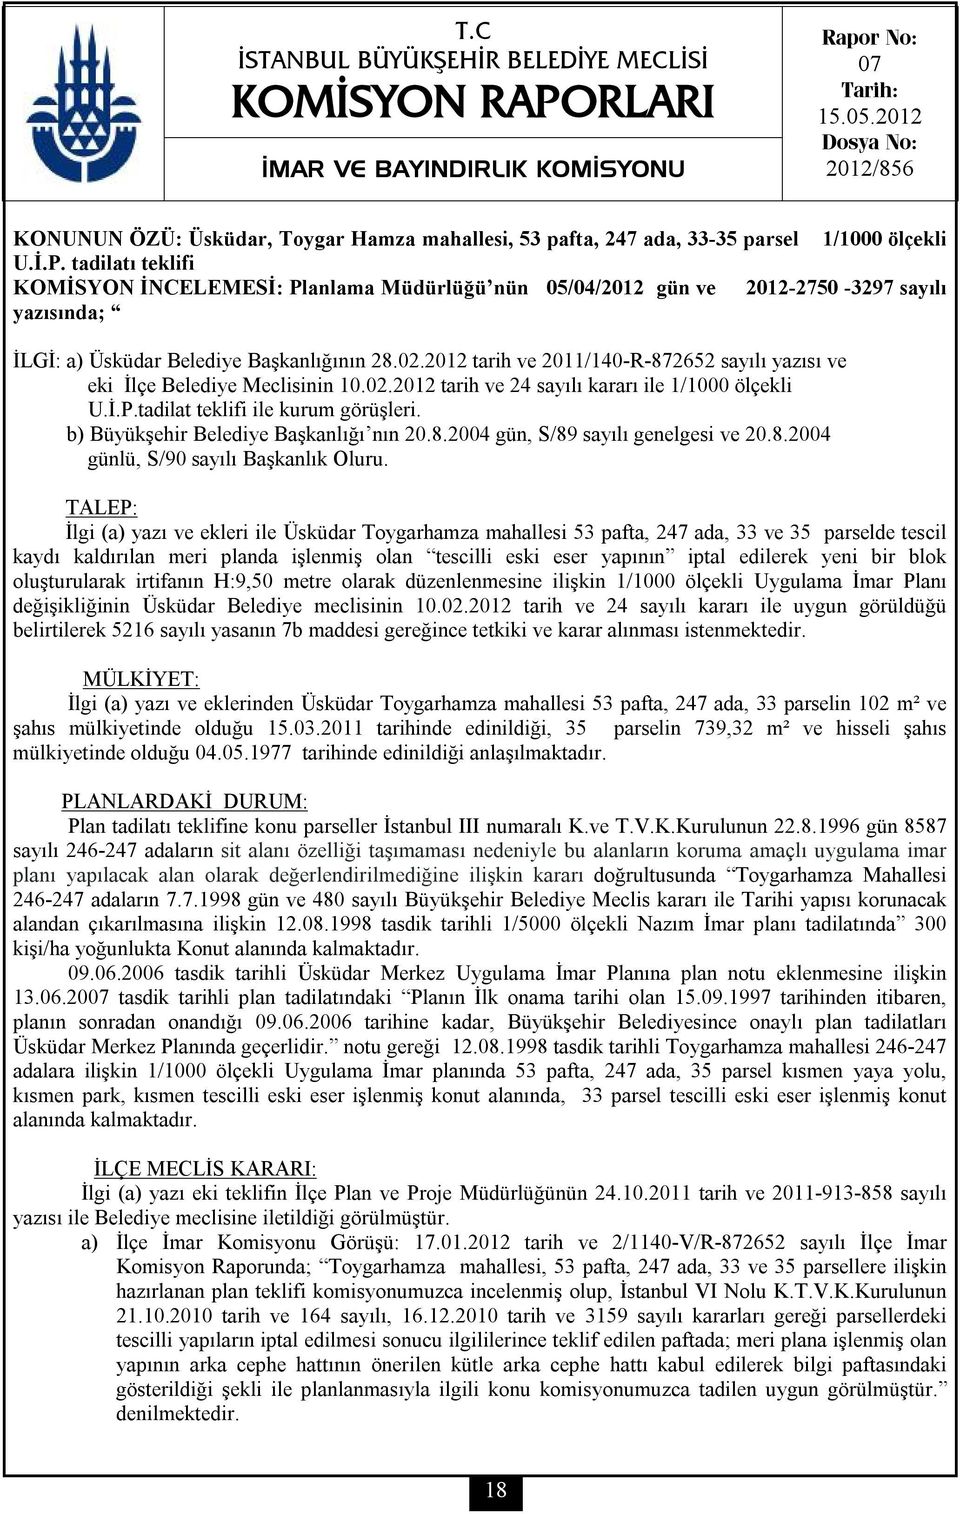 tadilatı teklifi KOMİSYON İNCELEMESİ: Planlama Müdürlüğü nün 05/04/2012 gün ve 2012-2750 -3297 sayılı yazısında; İLGİ: a) Üsküdar Belediye Başkanlığının 28.02.